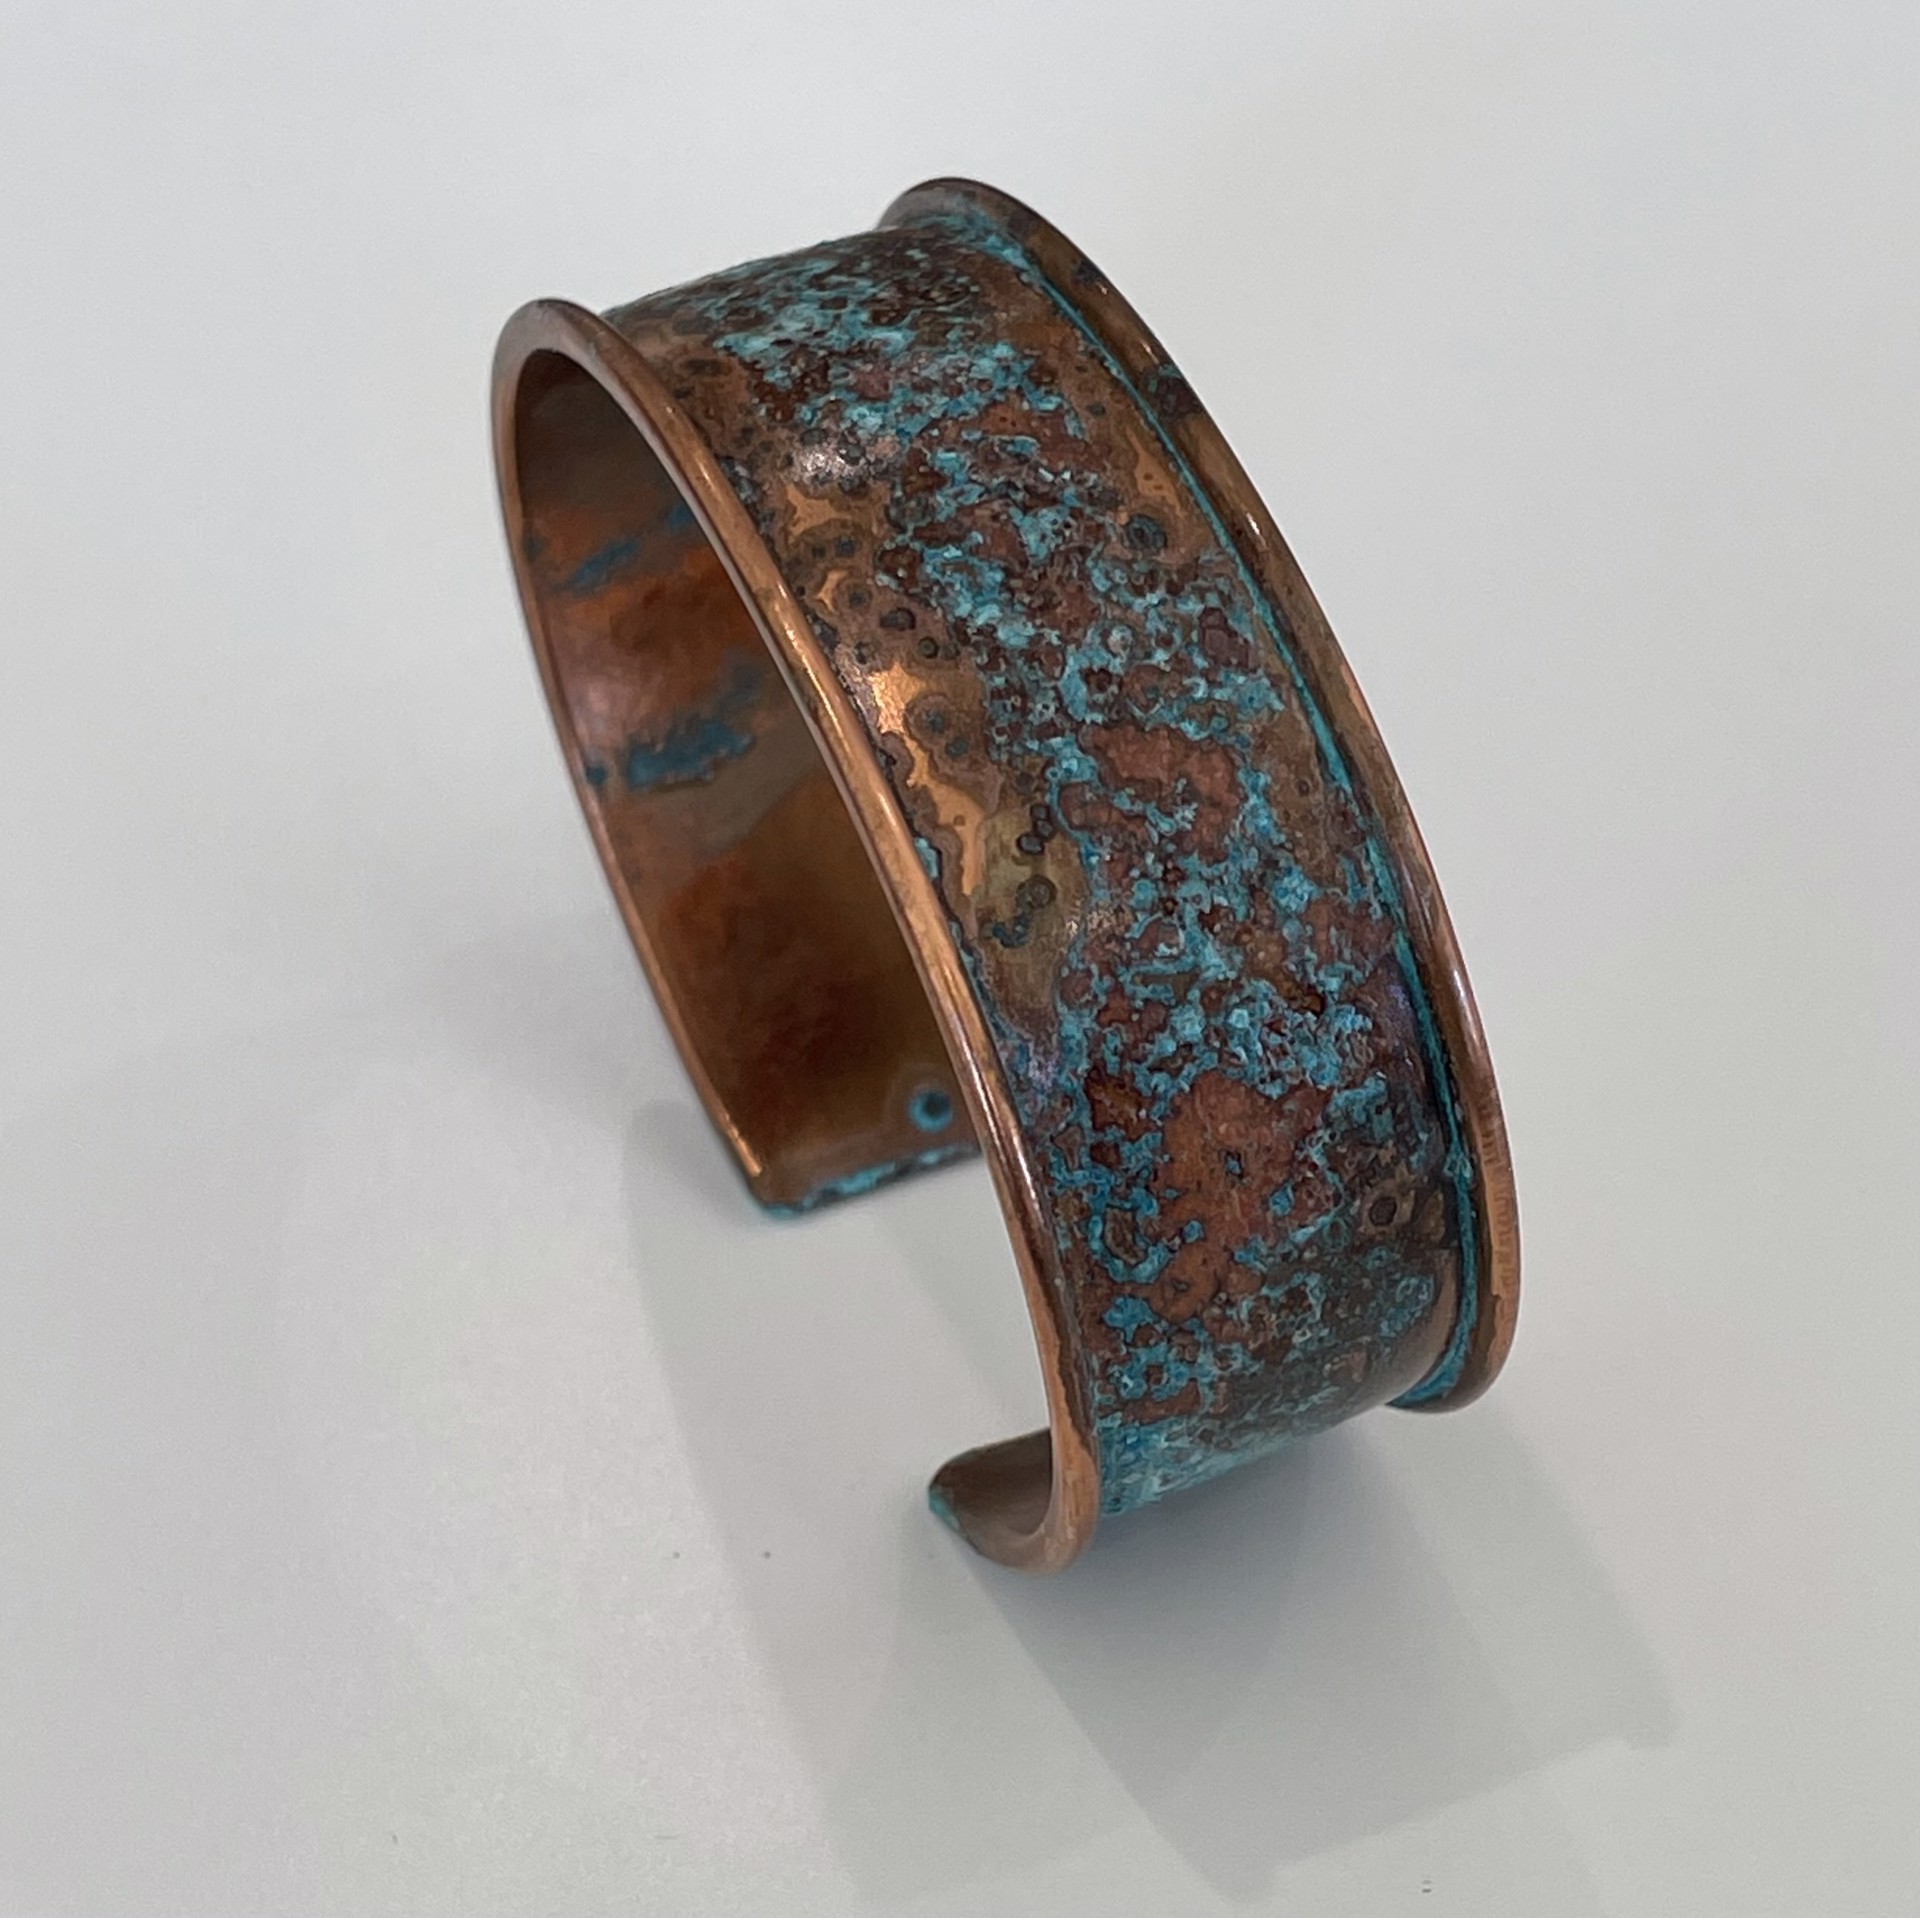 Abstract Patina Copper Bracelet by Keri Davis